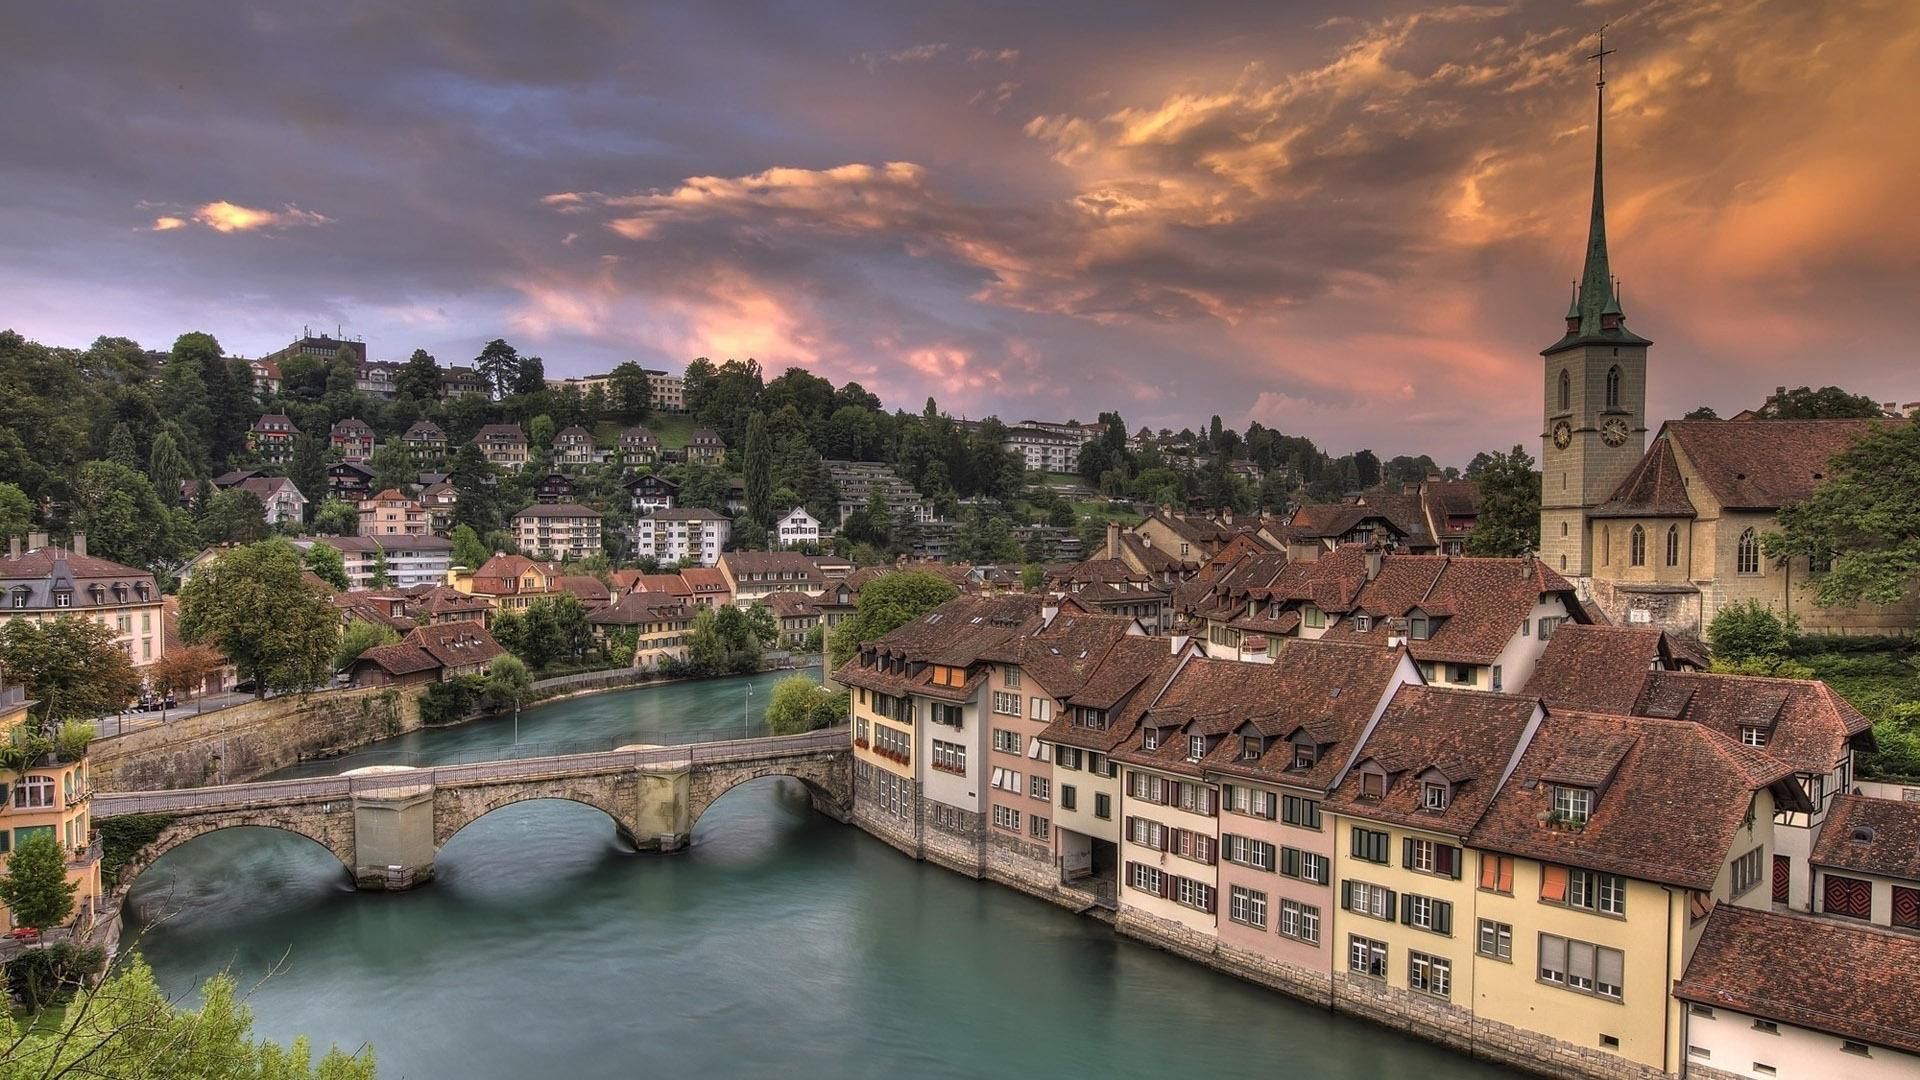 Tempat Wisata Terindah Di Dunia - Bern Switzerland - HD Wallpaper 